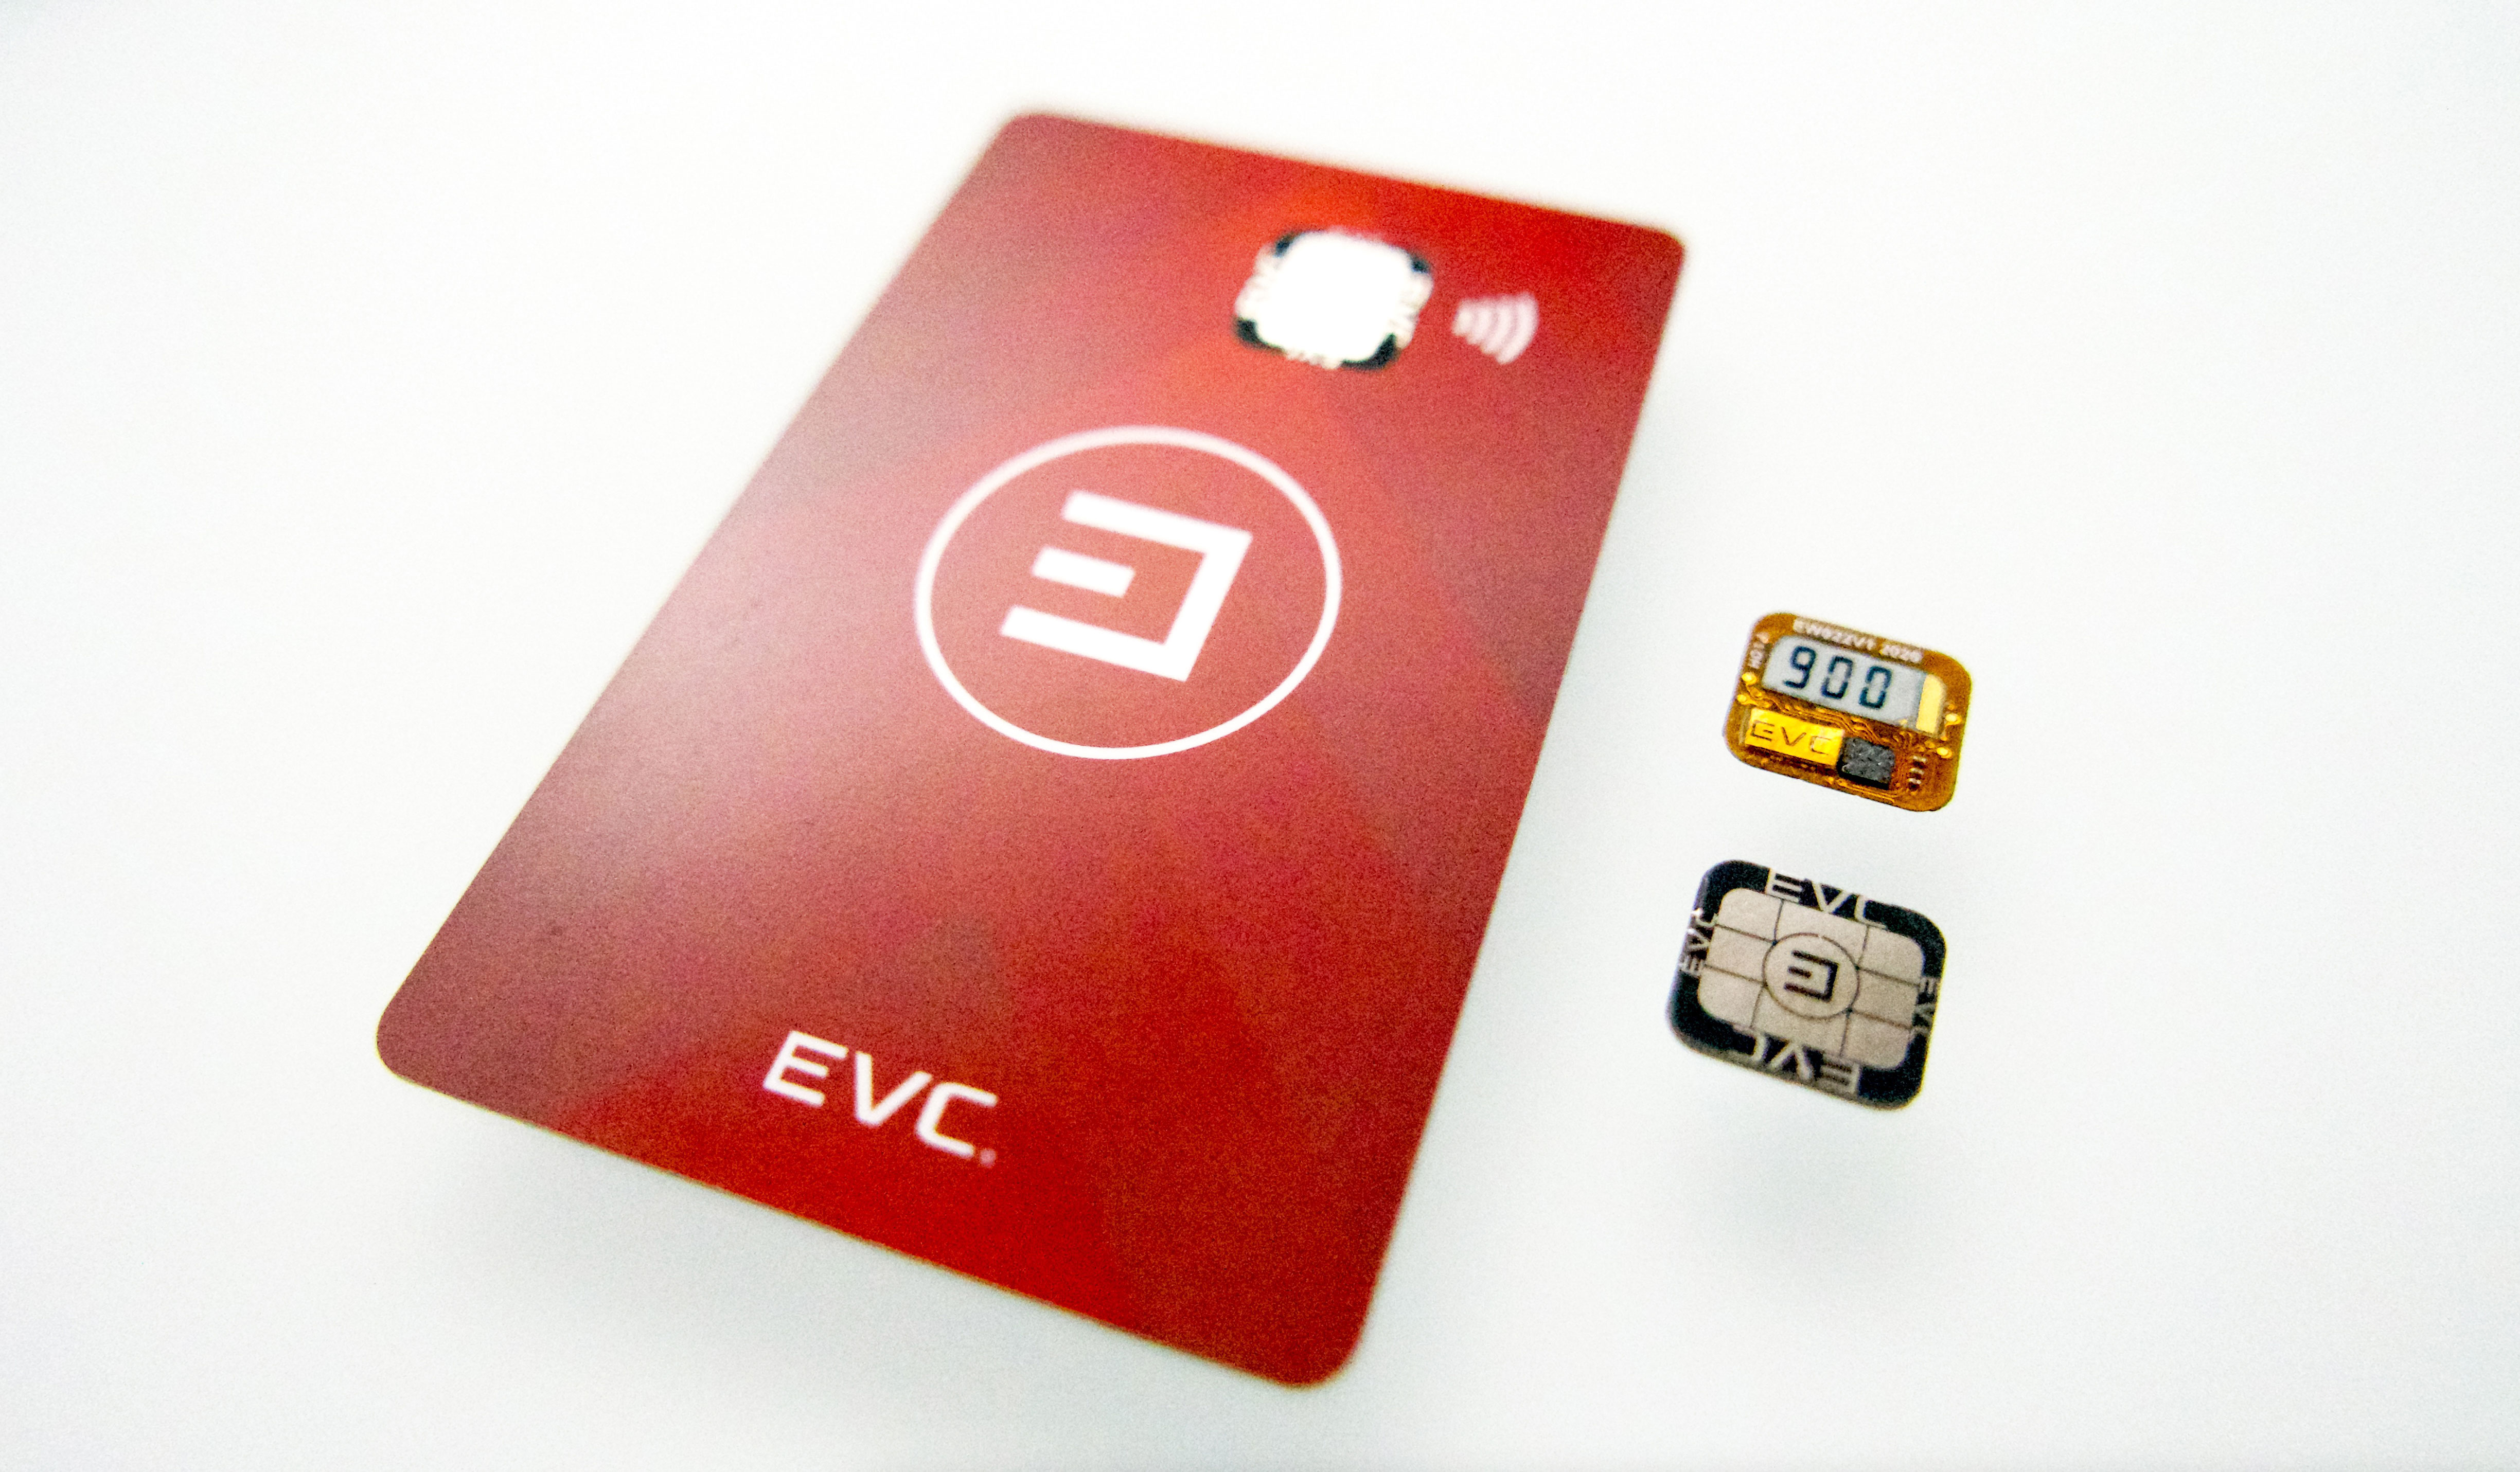 EVC-EPAPER-RedCard.jpg